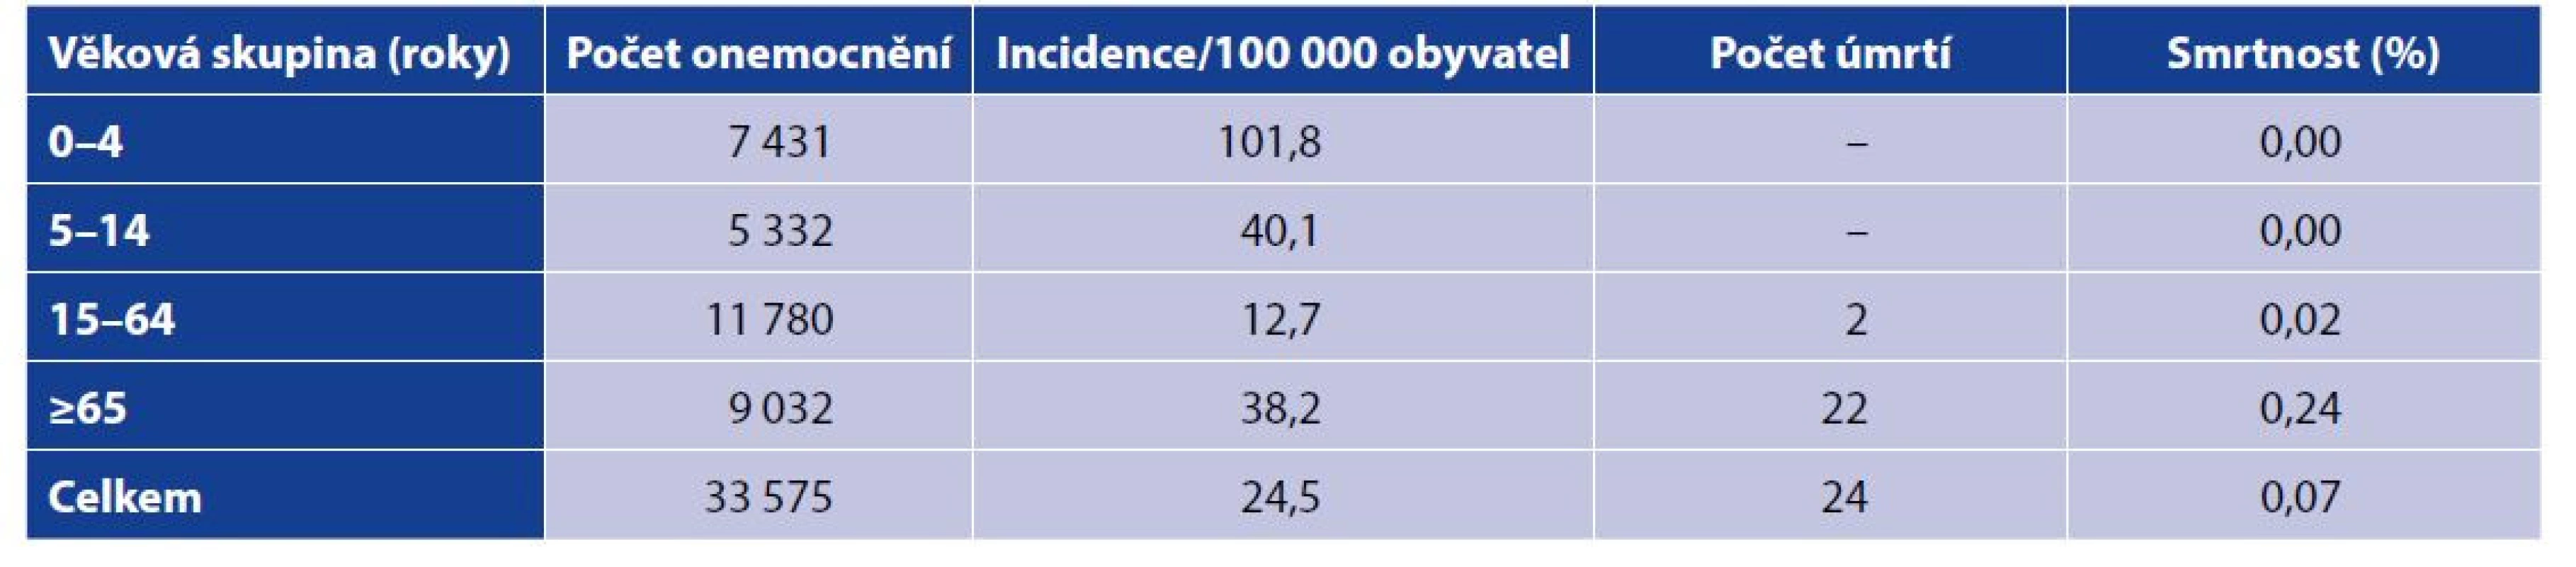 Počty, incidence a smrtnost norovirových gastroenteritid podle věku (ČR, 2008–2020)<br>
Table 2. Cases, incidence, and case fatality rate of norovirus gastroenteritis by age (Czech Republic, 2008–2020)